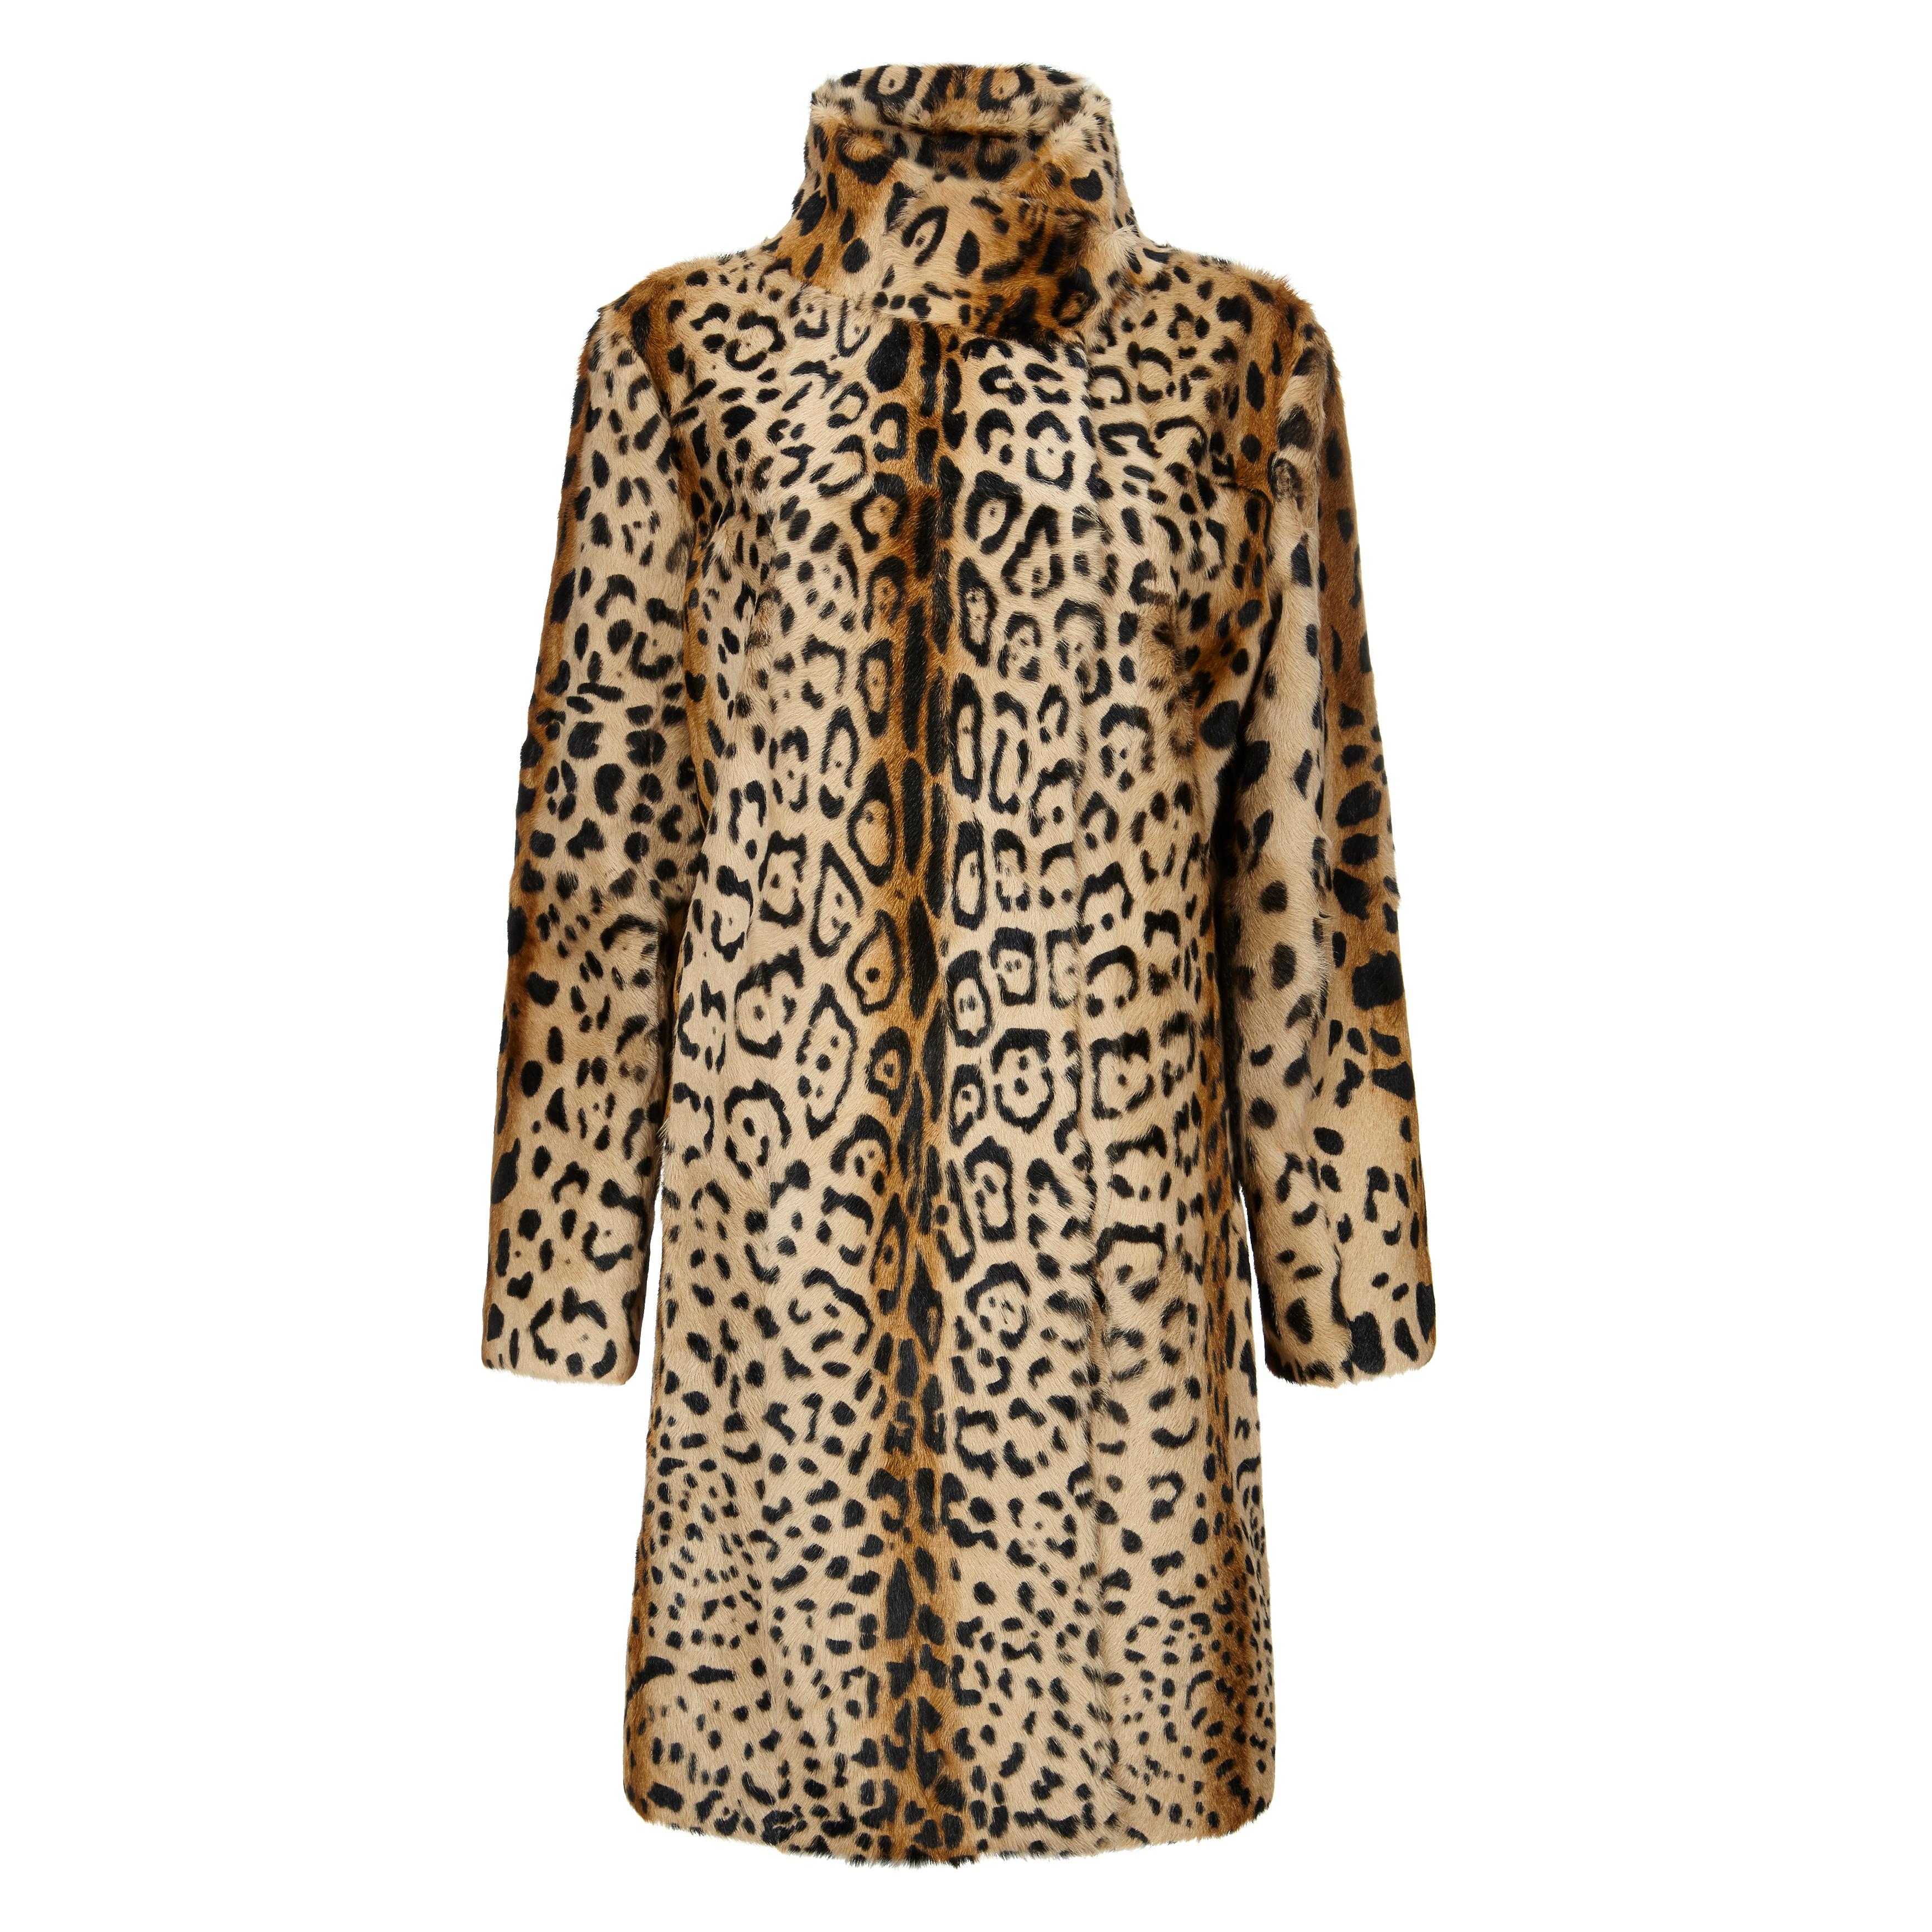 Verheyen Lon High Collar Leopard Print Coat in Goat Hair Fur Size 12-14